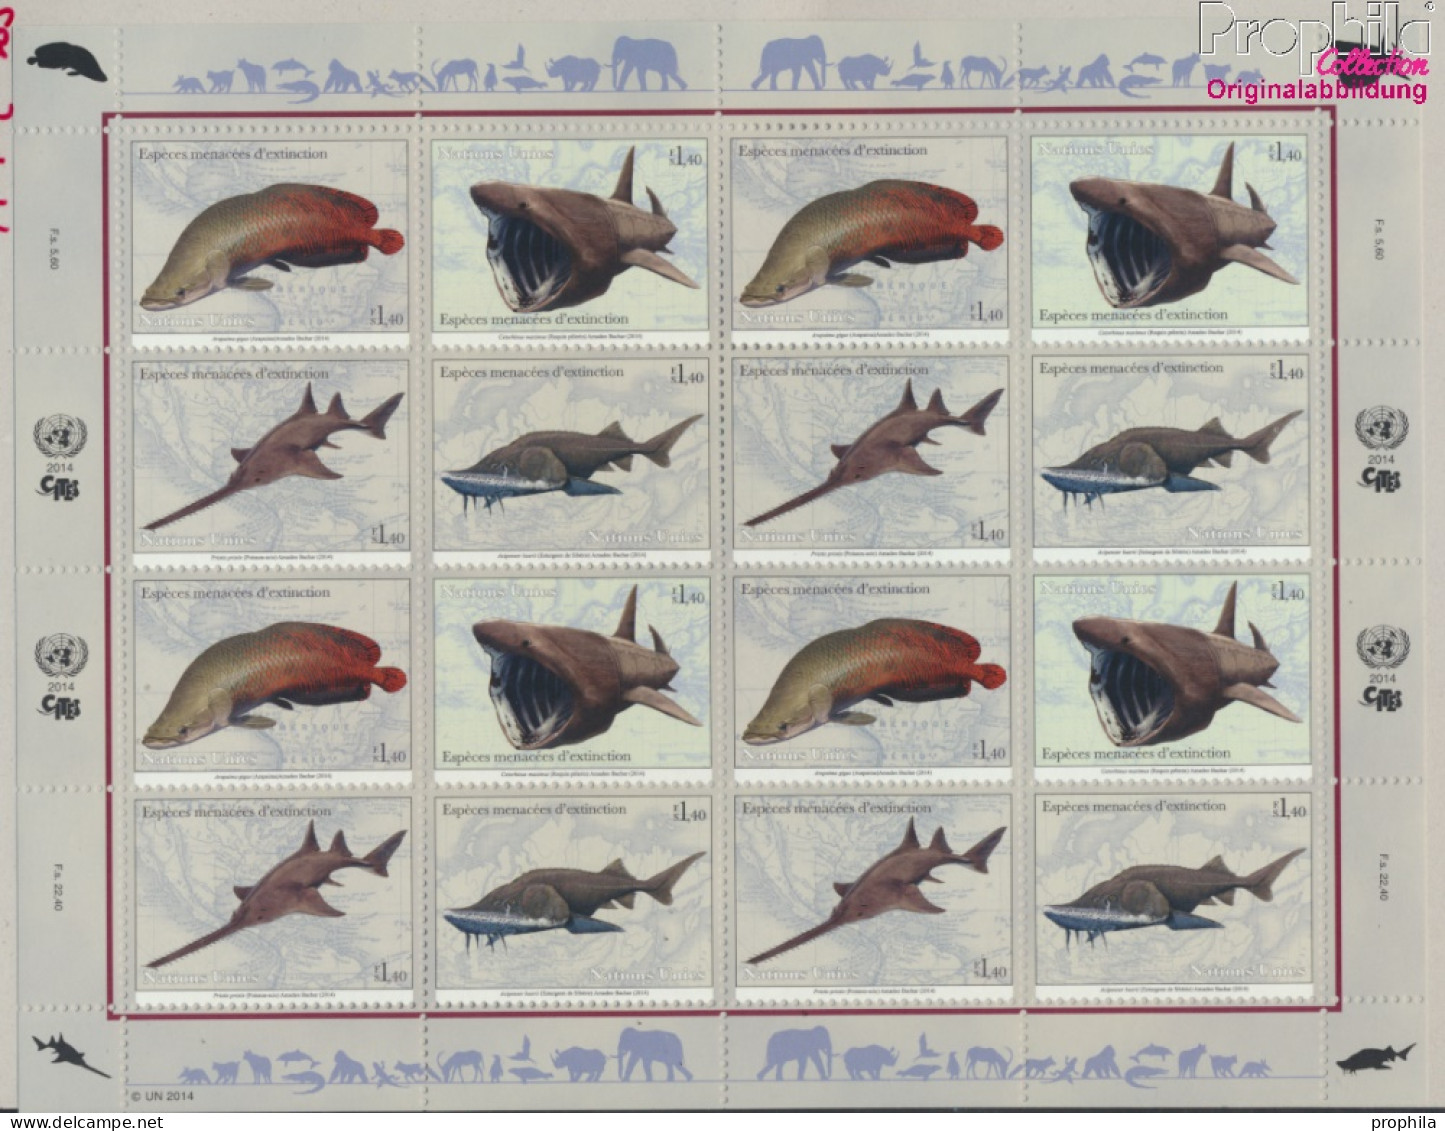 UNO - Genf 884-887Klb Kleinbogen (kompl.Ausg.) Postfrisch 2014 Fische (10050255 - Unused Stamps